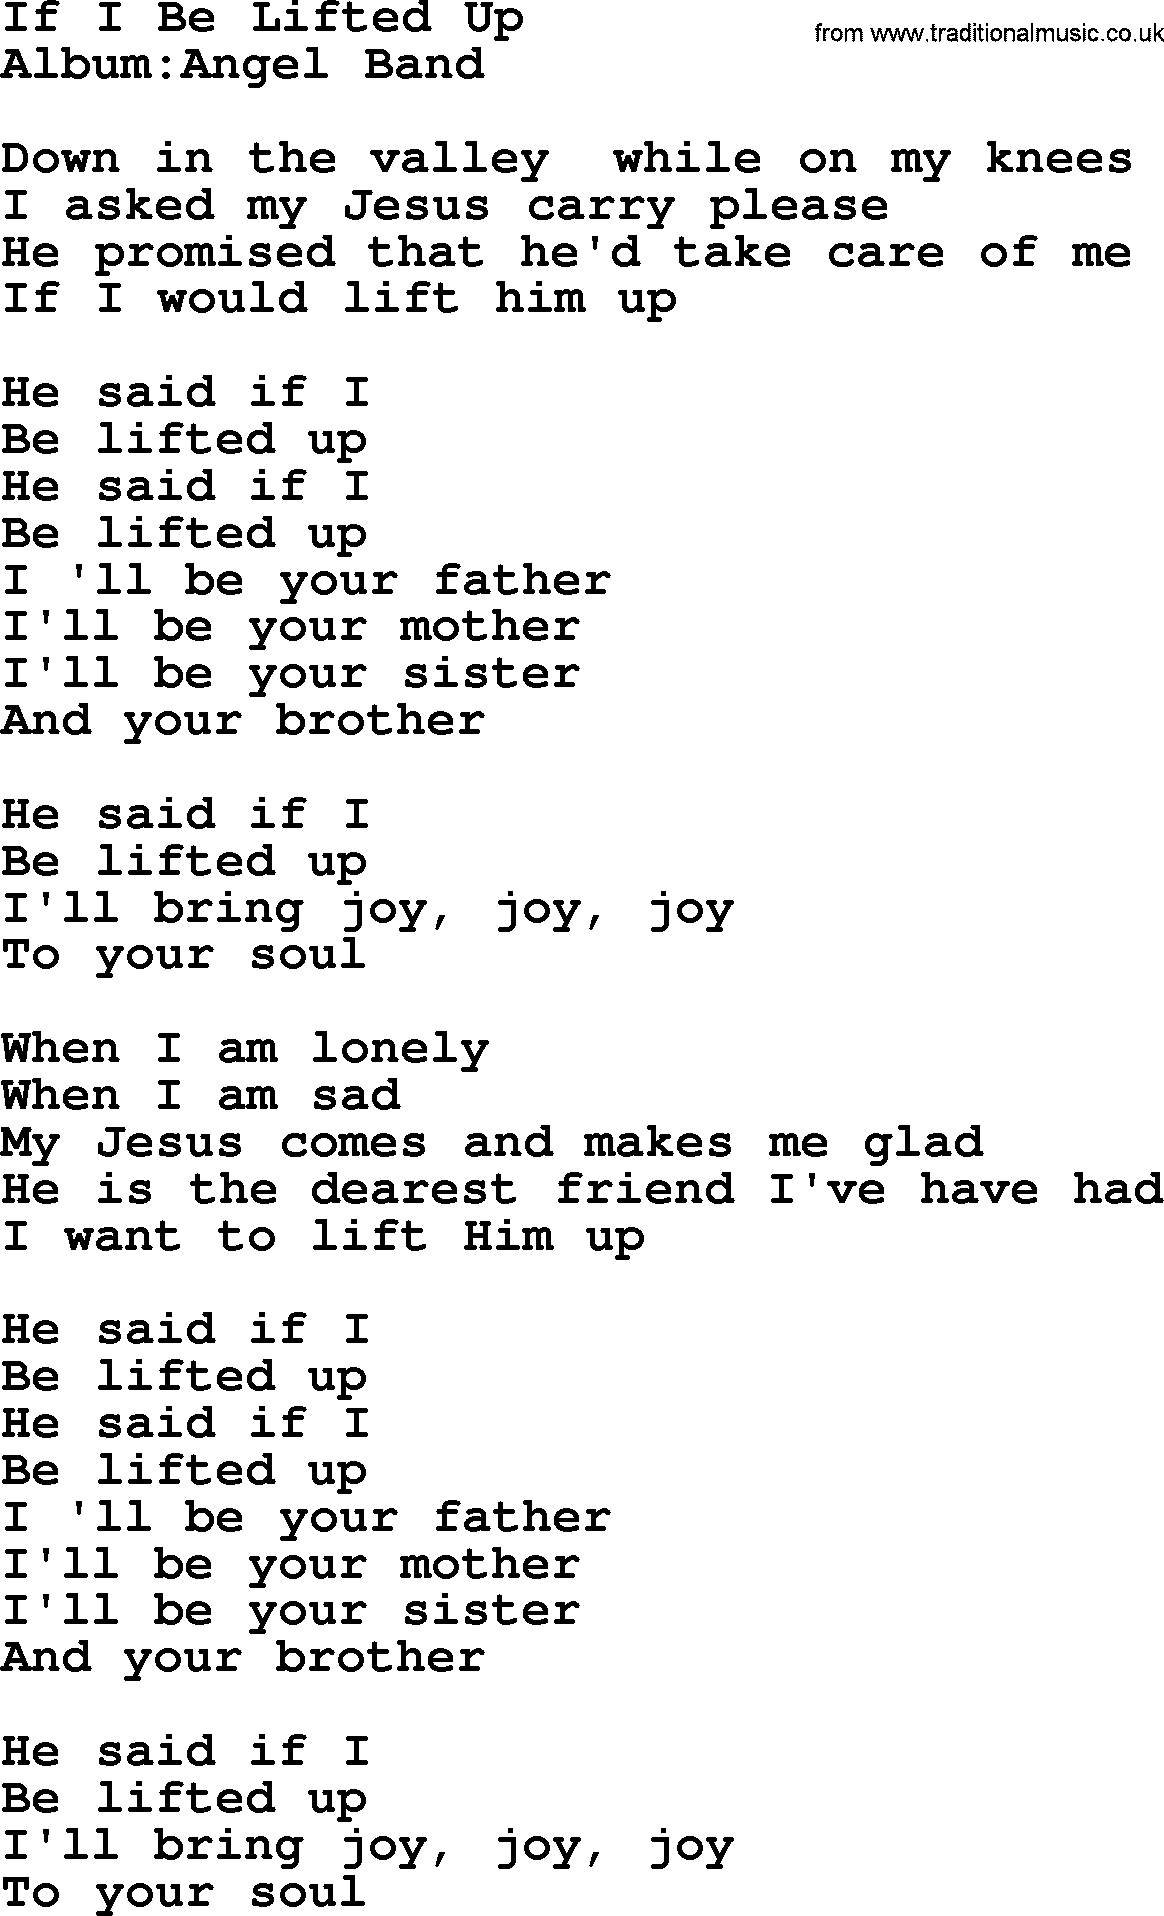 Emmylou Harris song: If I Be Lifted Up lyrics